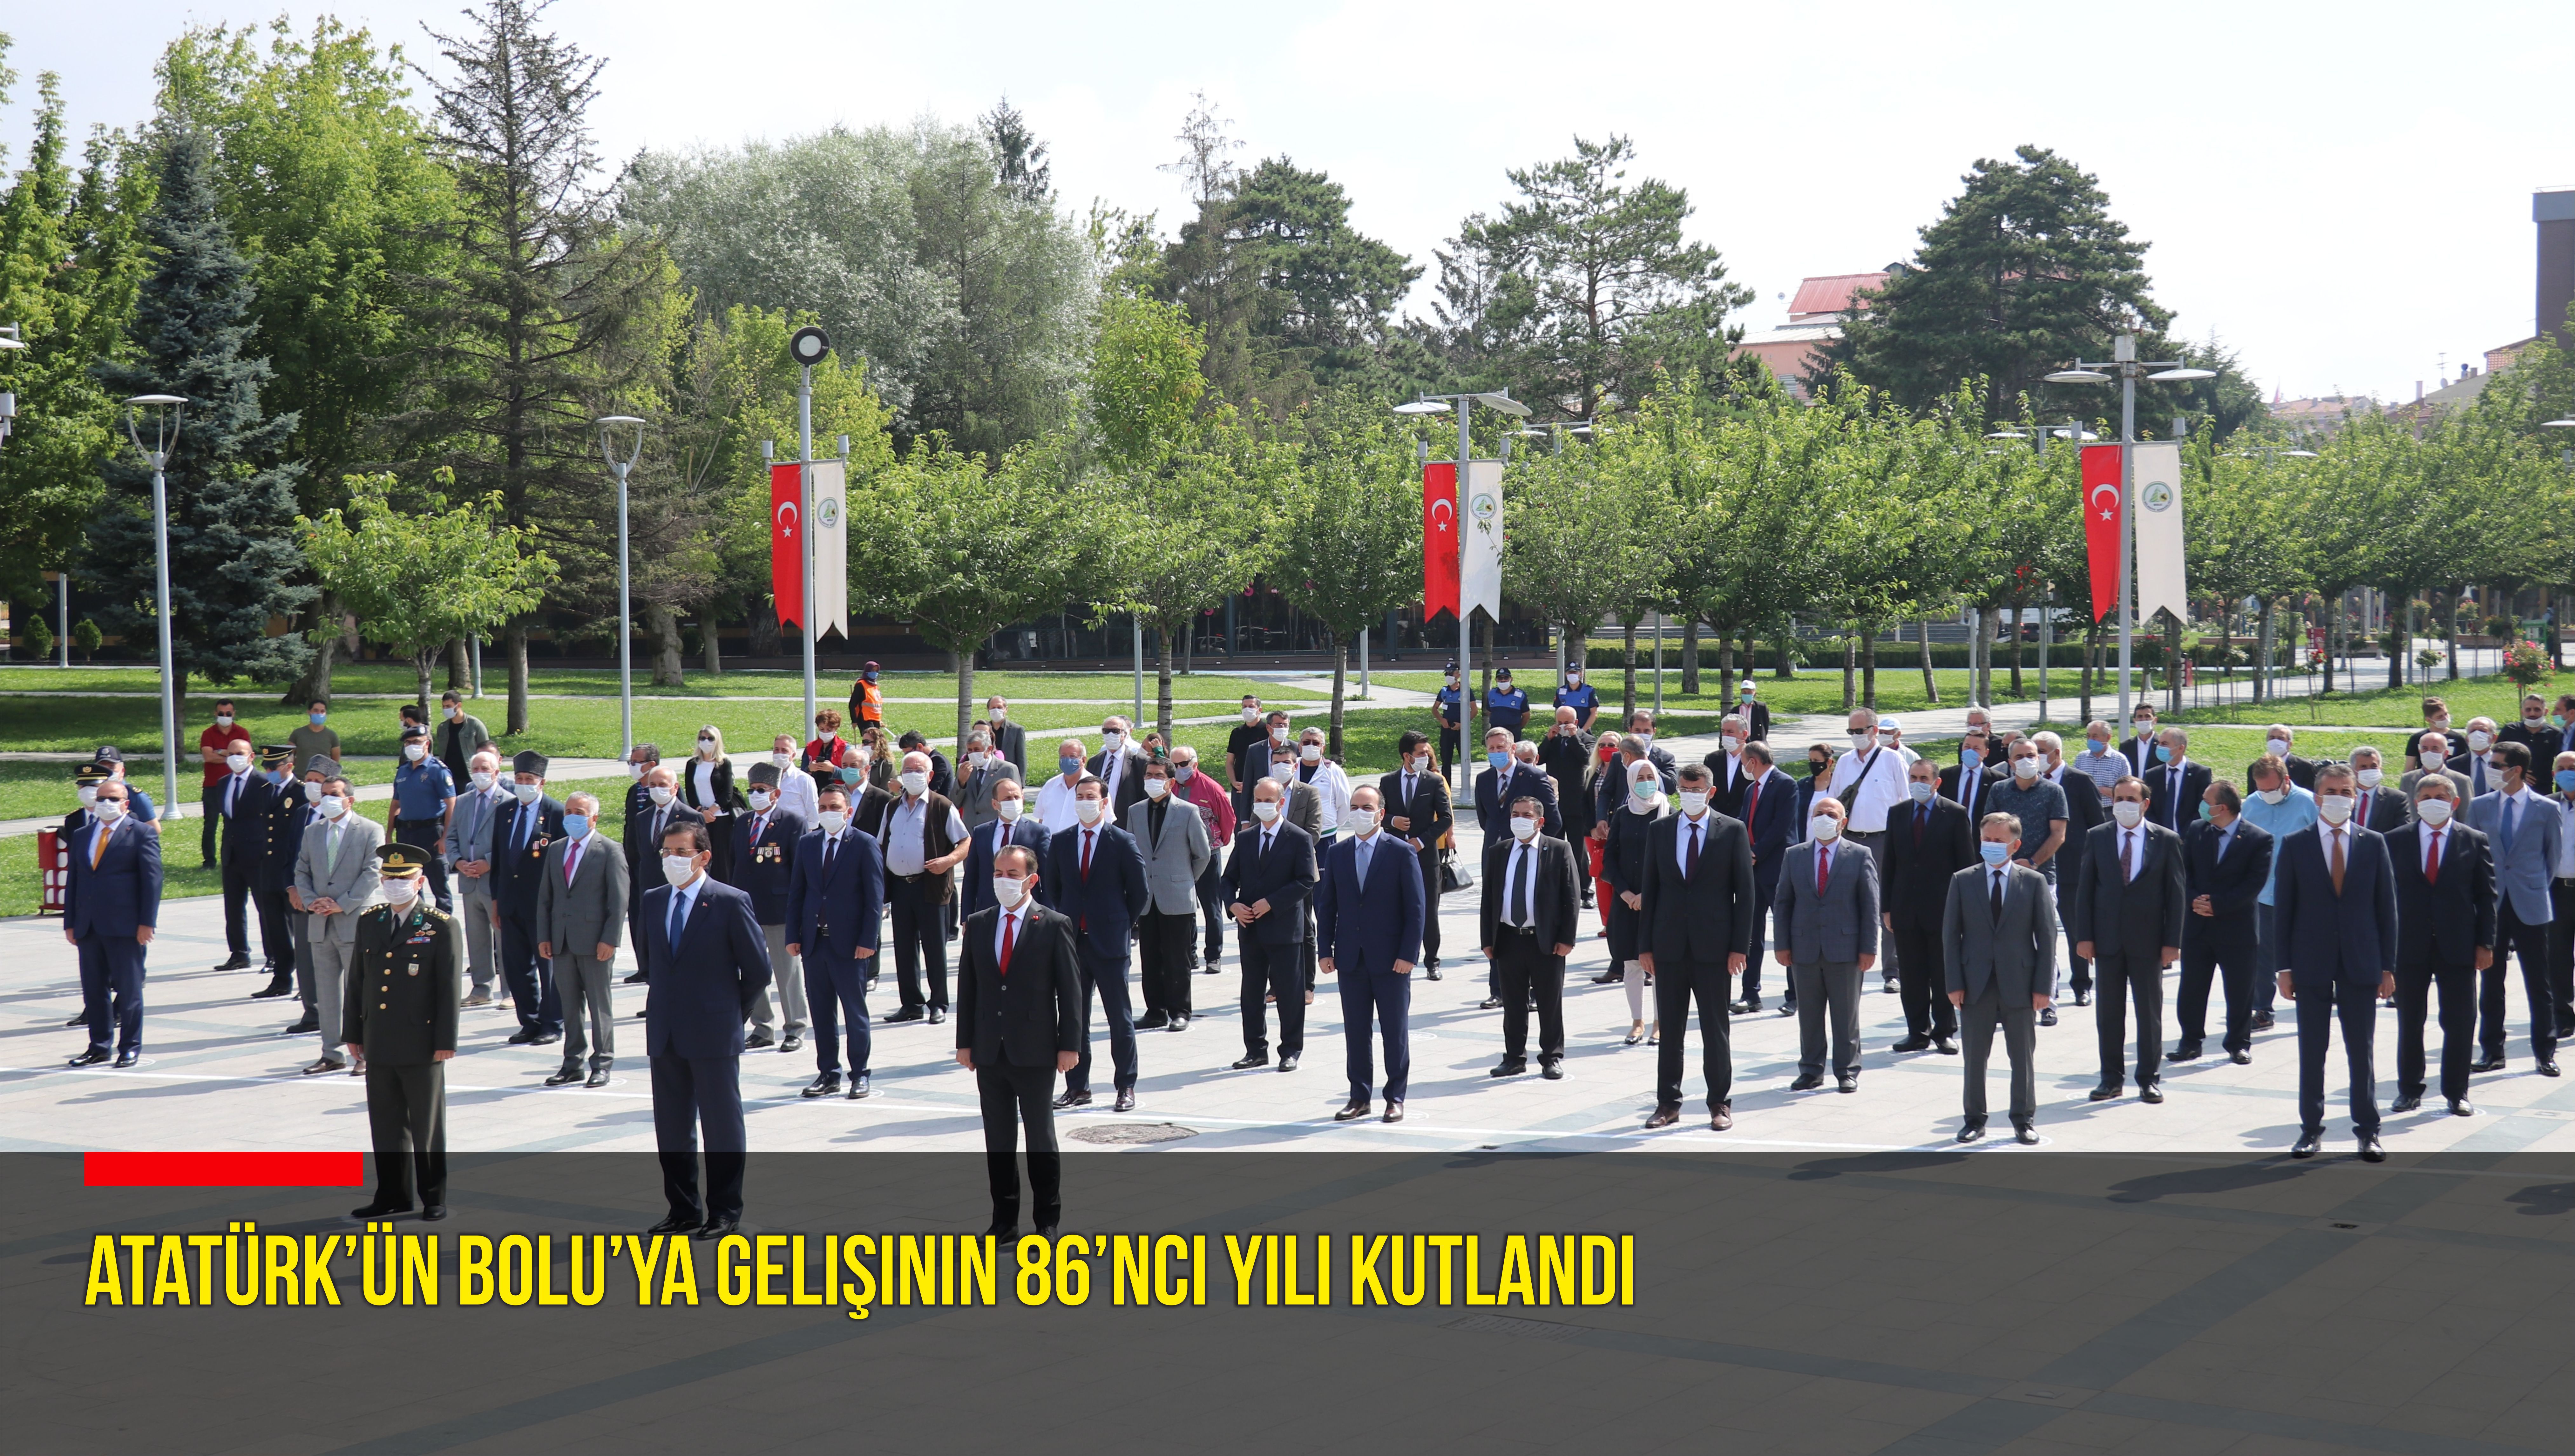 Mustafa Kemal Atatürk’ün gelişinin 86’ıncı yılı düzenlenen törenle kutlandı.